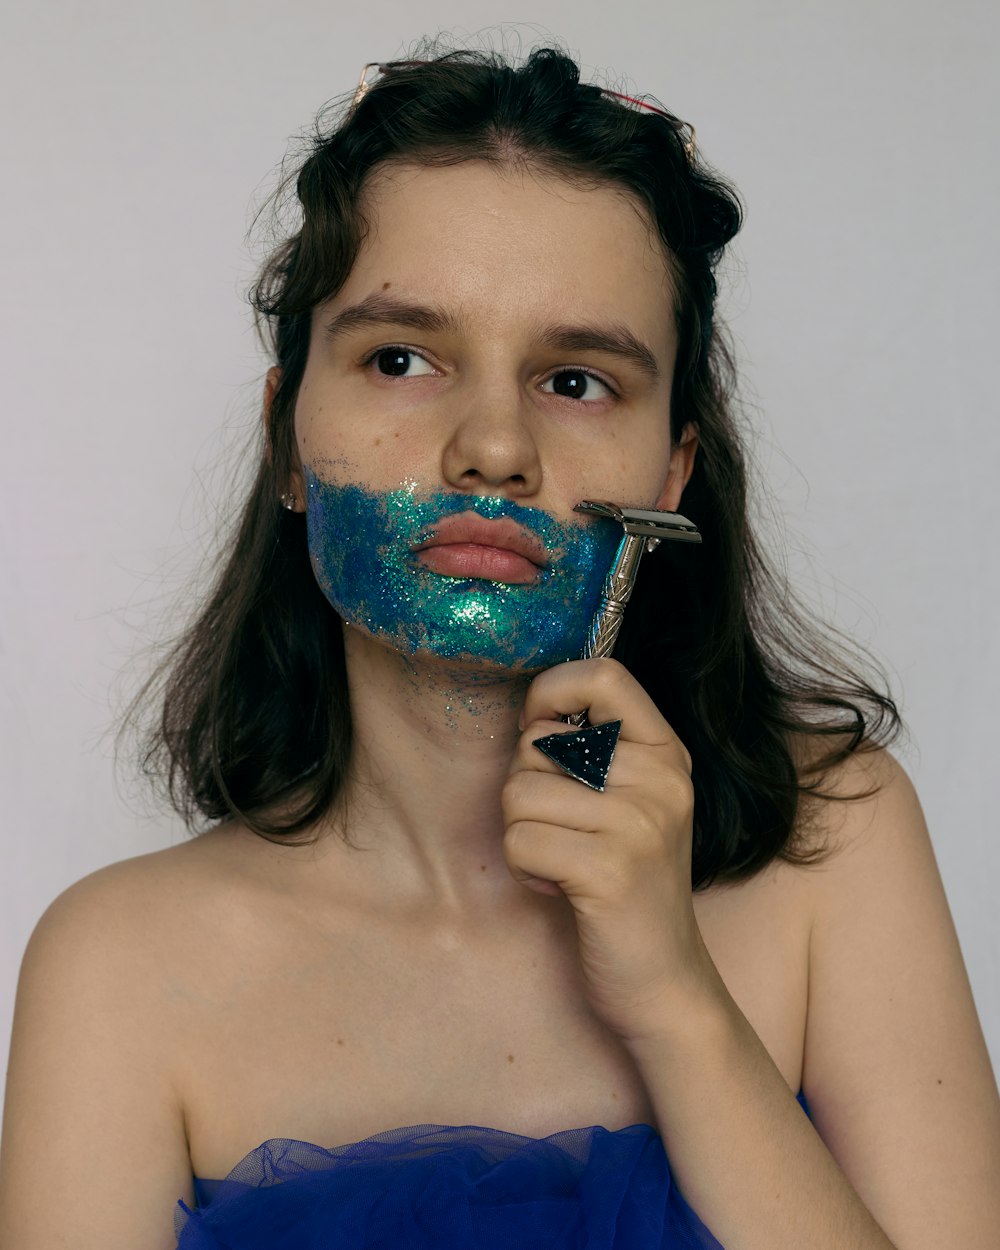 femme avec de la peinture bleue et verte sur son visage